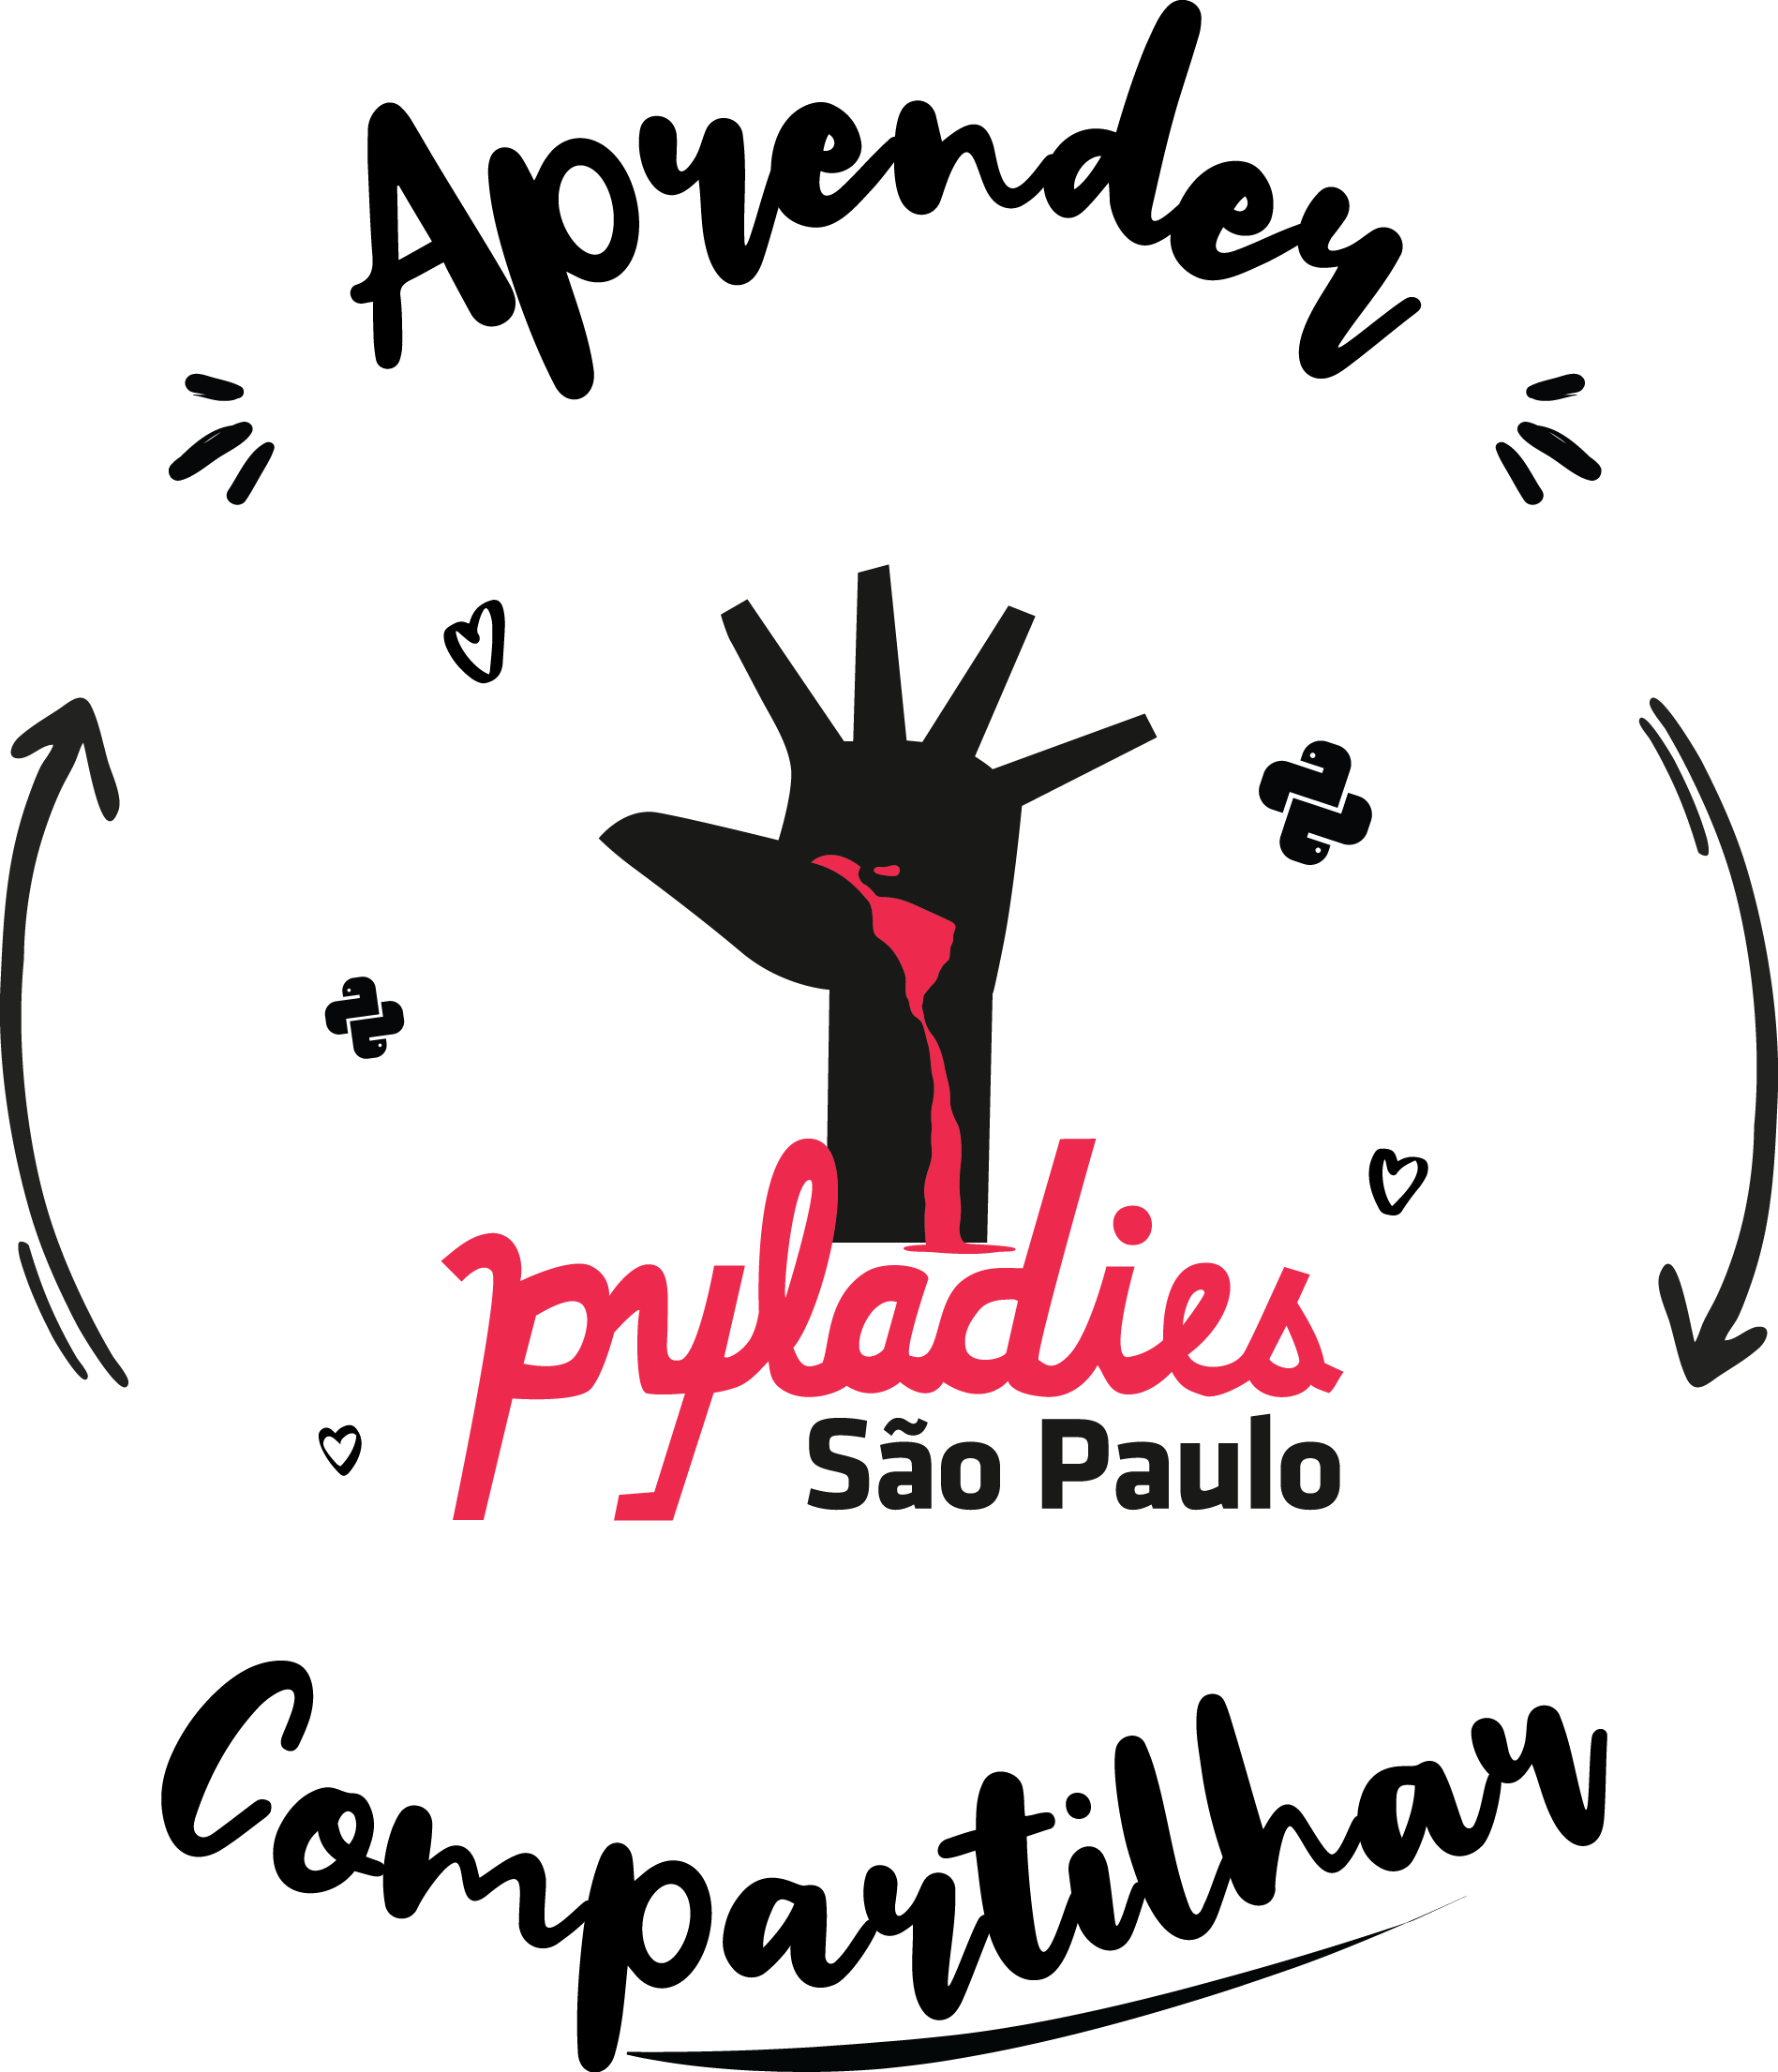 Logo das Pyladies São Paulo com o lema Aprender e Compatilhar